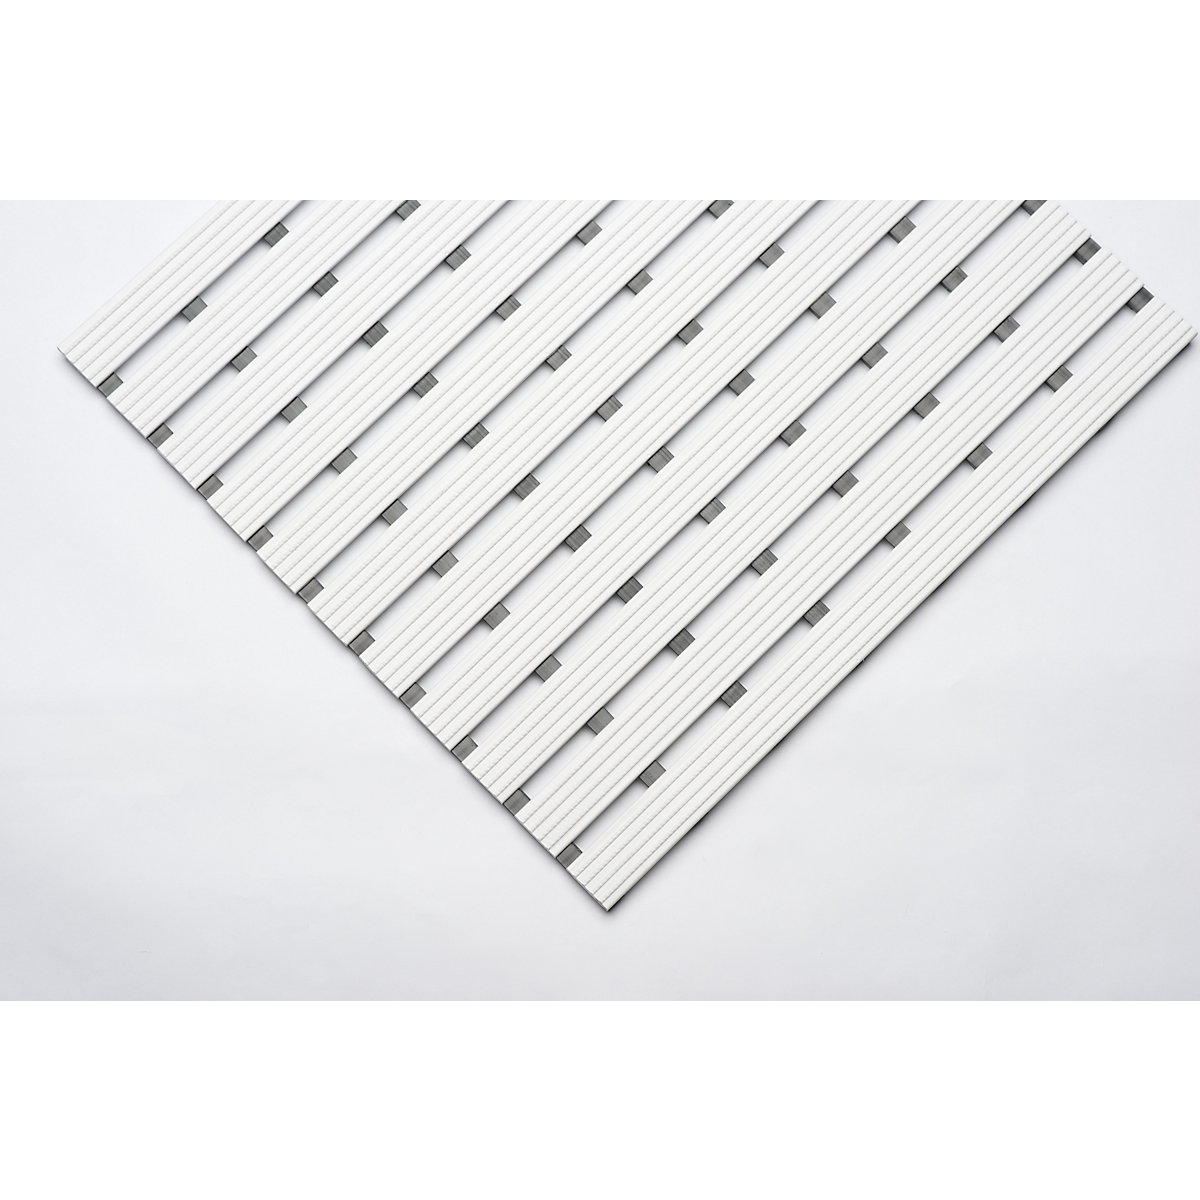 PVC-profilú szőnyeg, folyóméterenként, csúszásmentes futófelület kemény PVC-ből, szélesség 600 mm, fehér-9